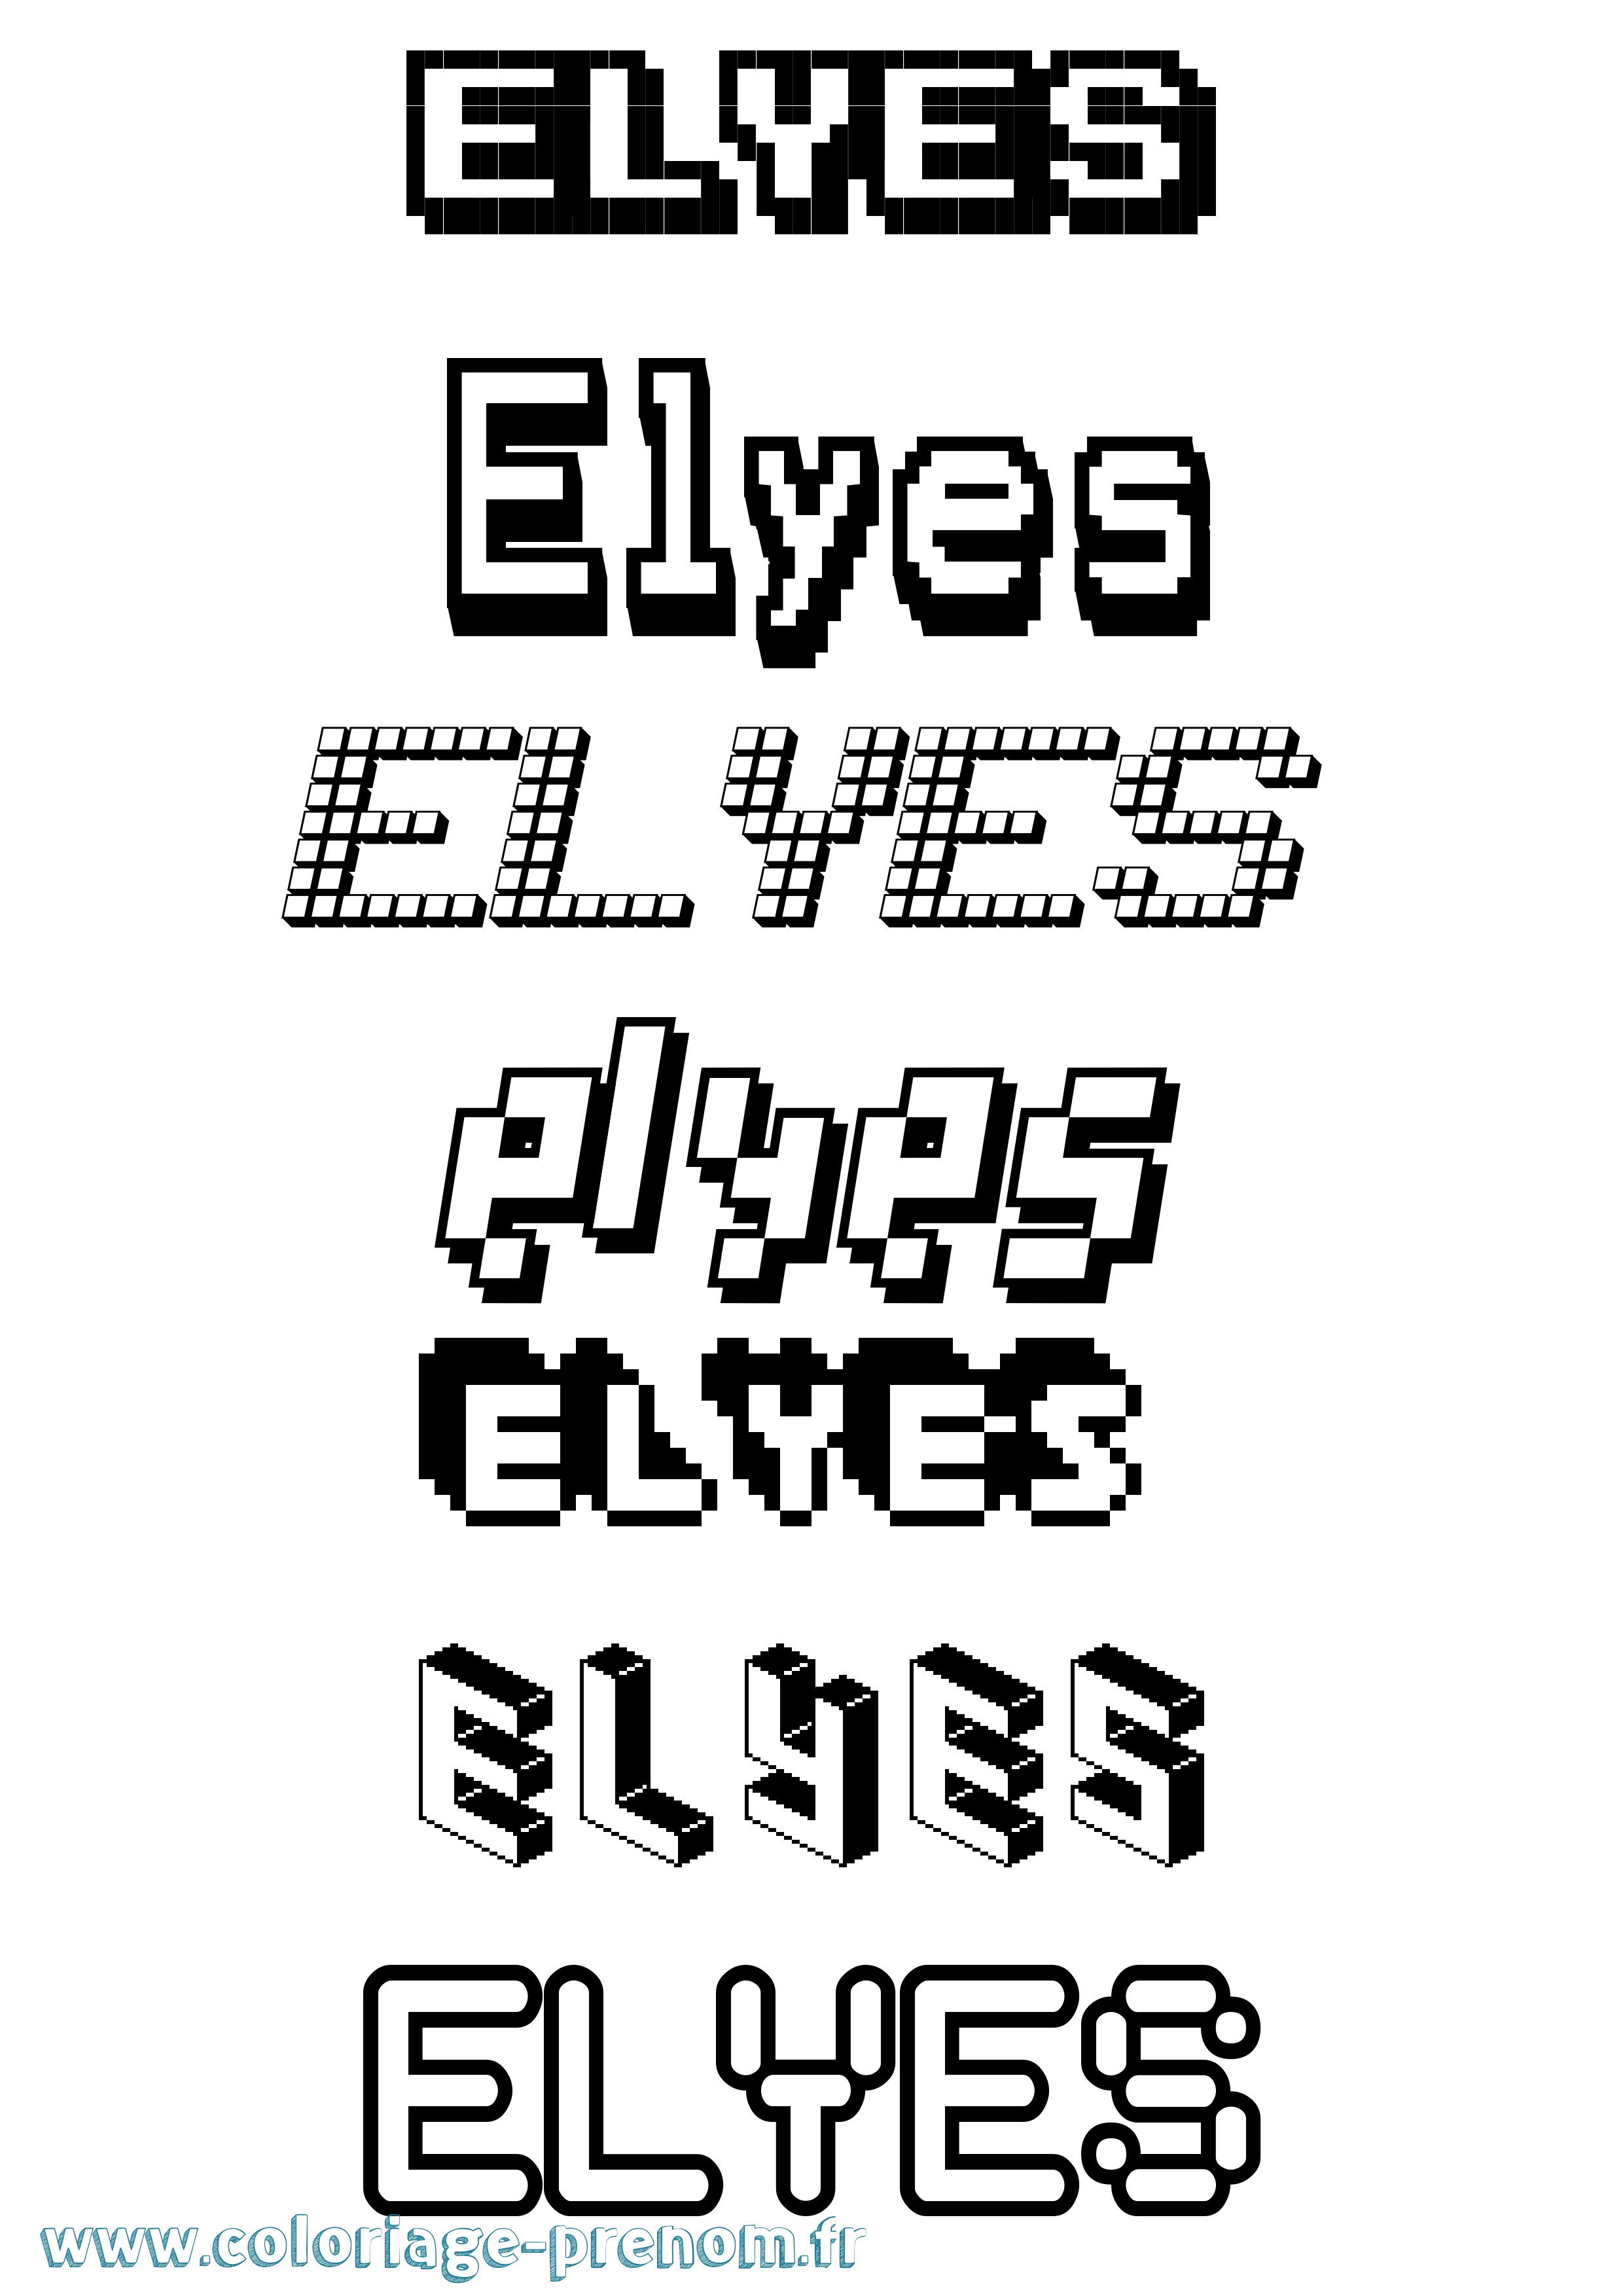 Coloriage prénom Elyes Pixel